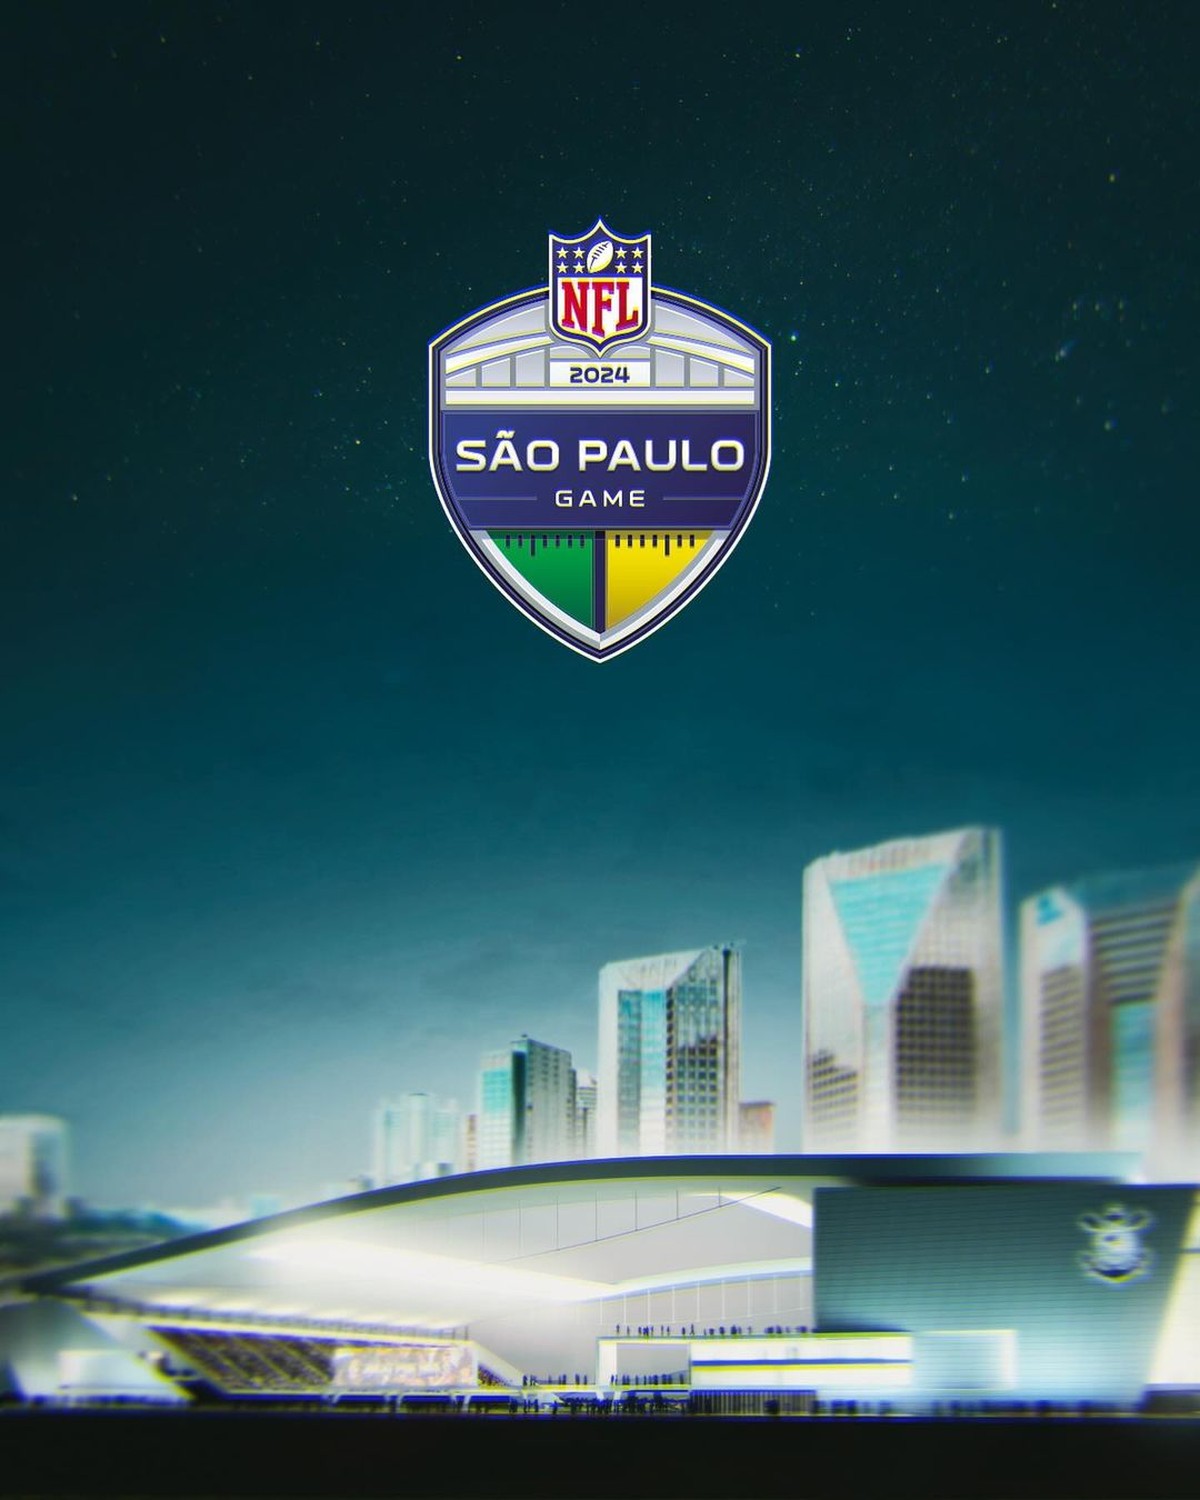 Ingressos, preços, times: o que já se sabe sobre o jogo da NFL no Brasil